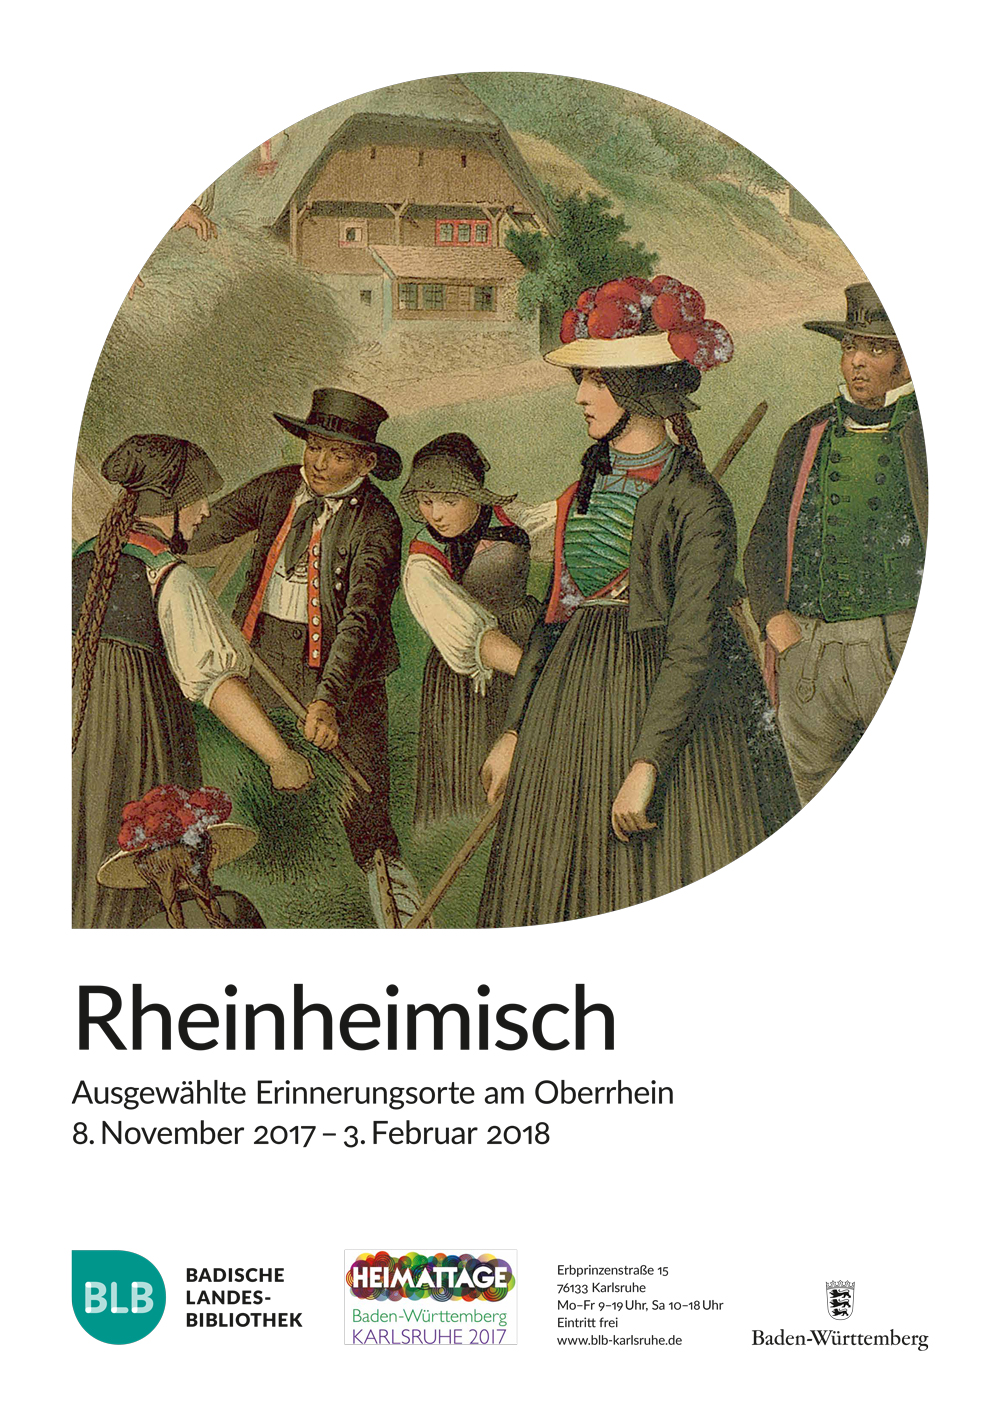 Das Plakat zeigt eine Schwarzwaldszenerie mit einem Schwarzwaldhof im Hintergrund und vorgelagerten Personen in traditioneller Tracht. Ergänzt wird das Bild durch Informationen zur Laufzeit der Ausstellung.   